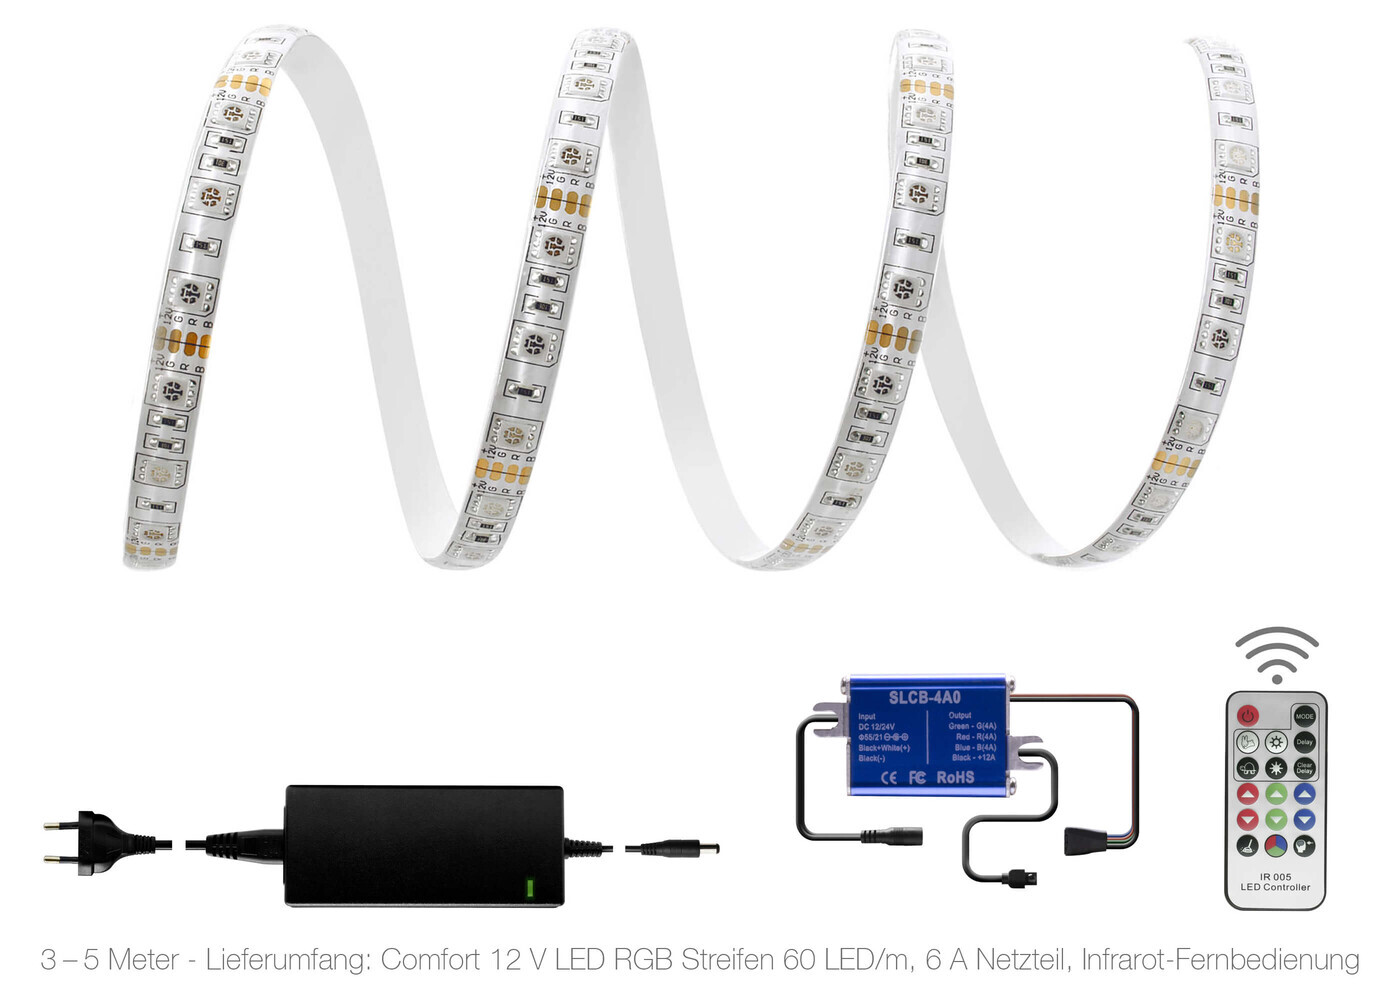 Hochwertiger farbenfroher 12V LED Streifen mit 60 Leuchteinheiten pro Meter von LED Universum, inklusive Fernbedienung und Netzteil